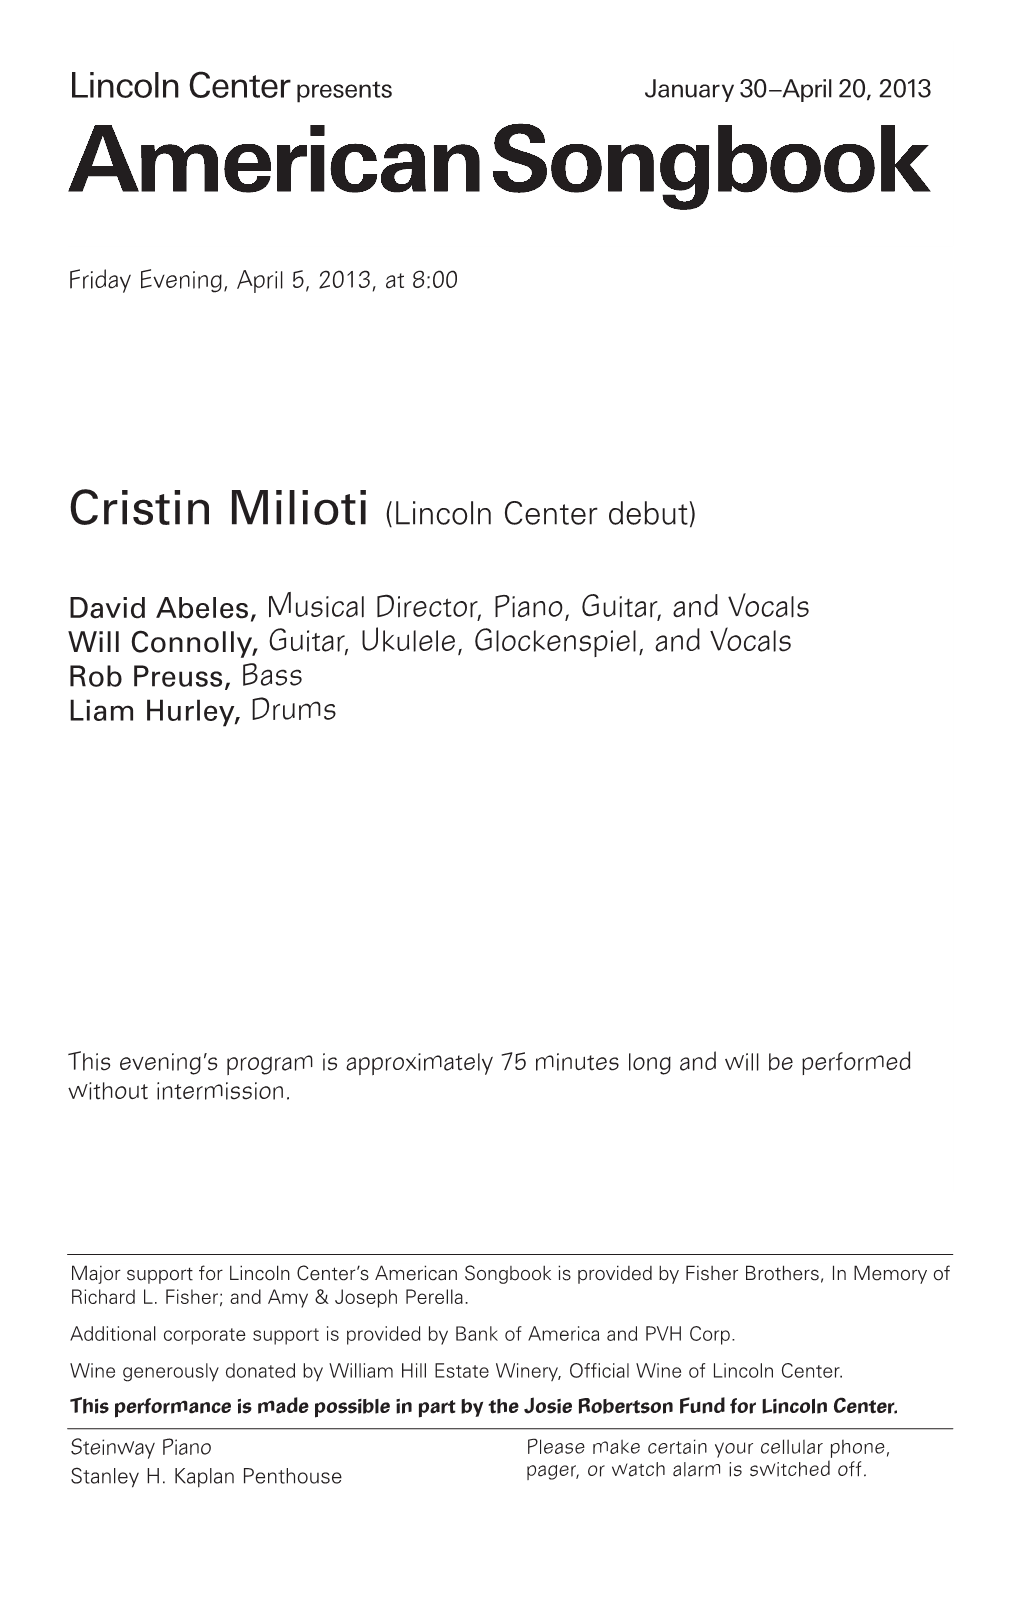 Cristin Milioti (Lincoln Center Debut)